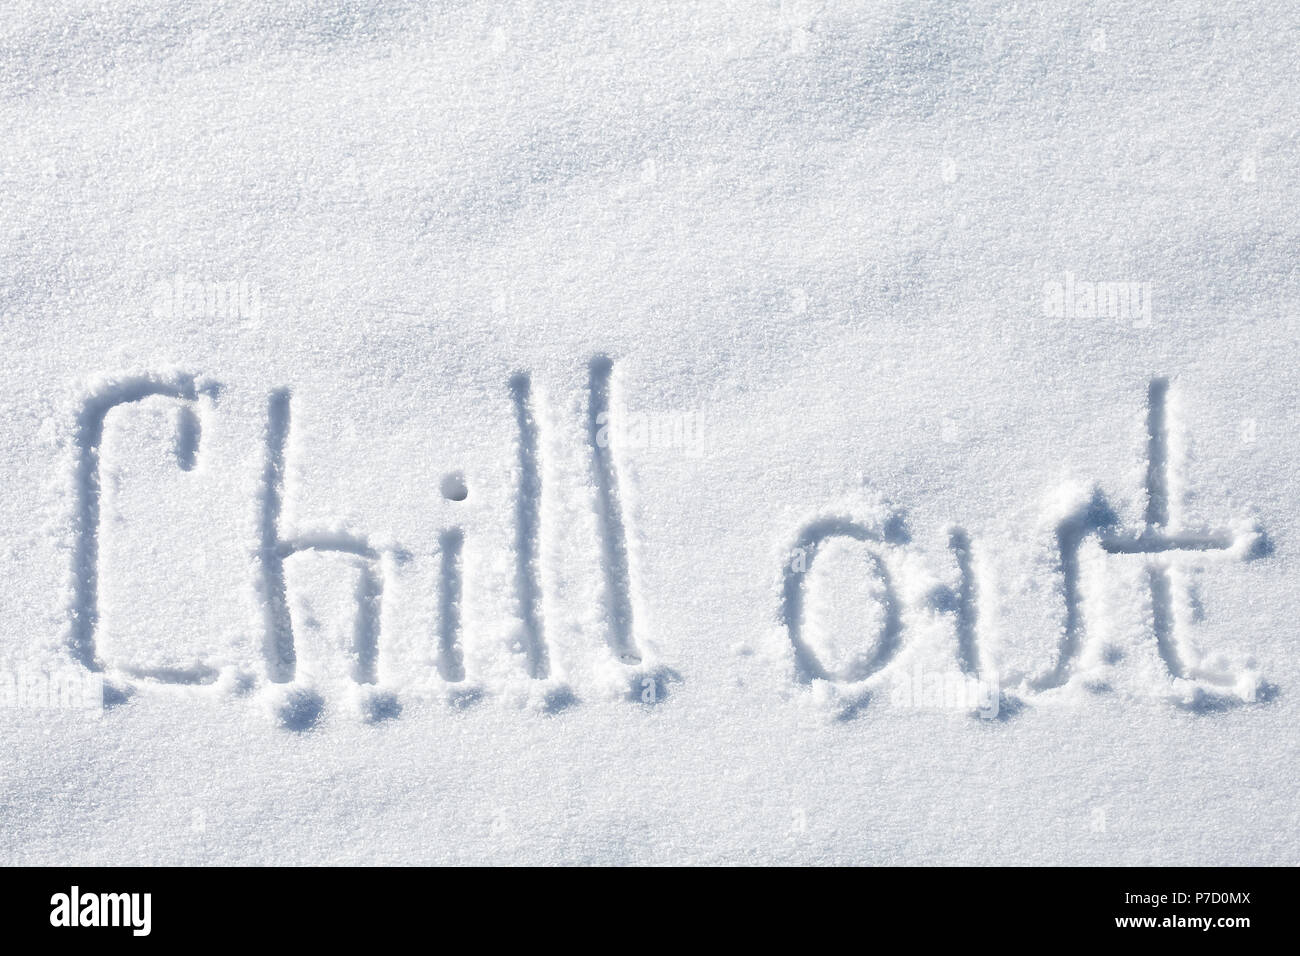 Chill out. Texte dessiné à la main sur de la neige fraîche Banque D'Images